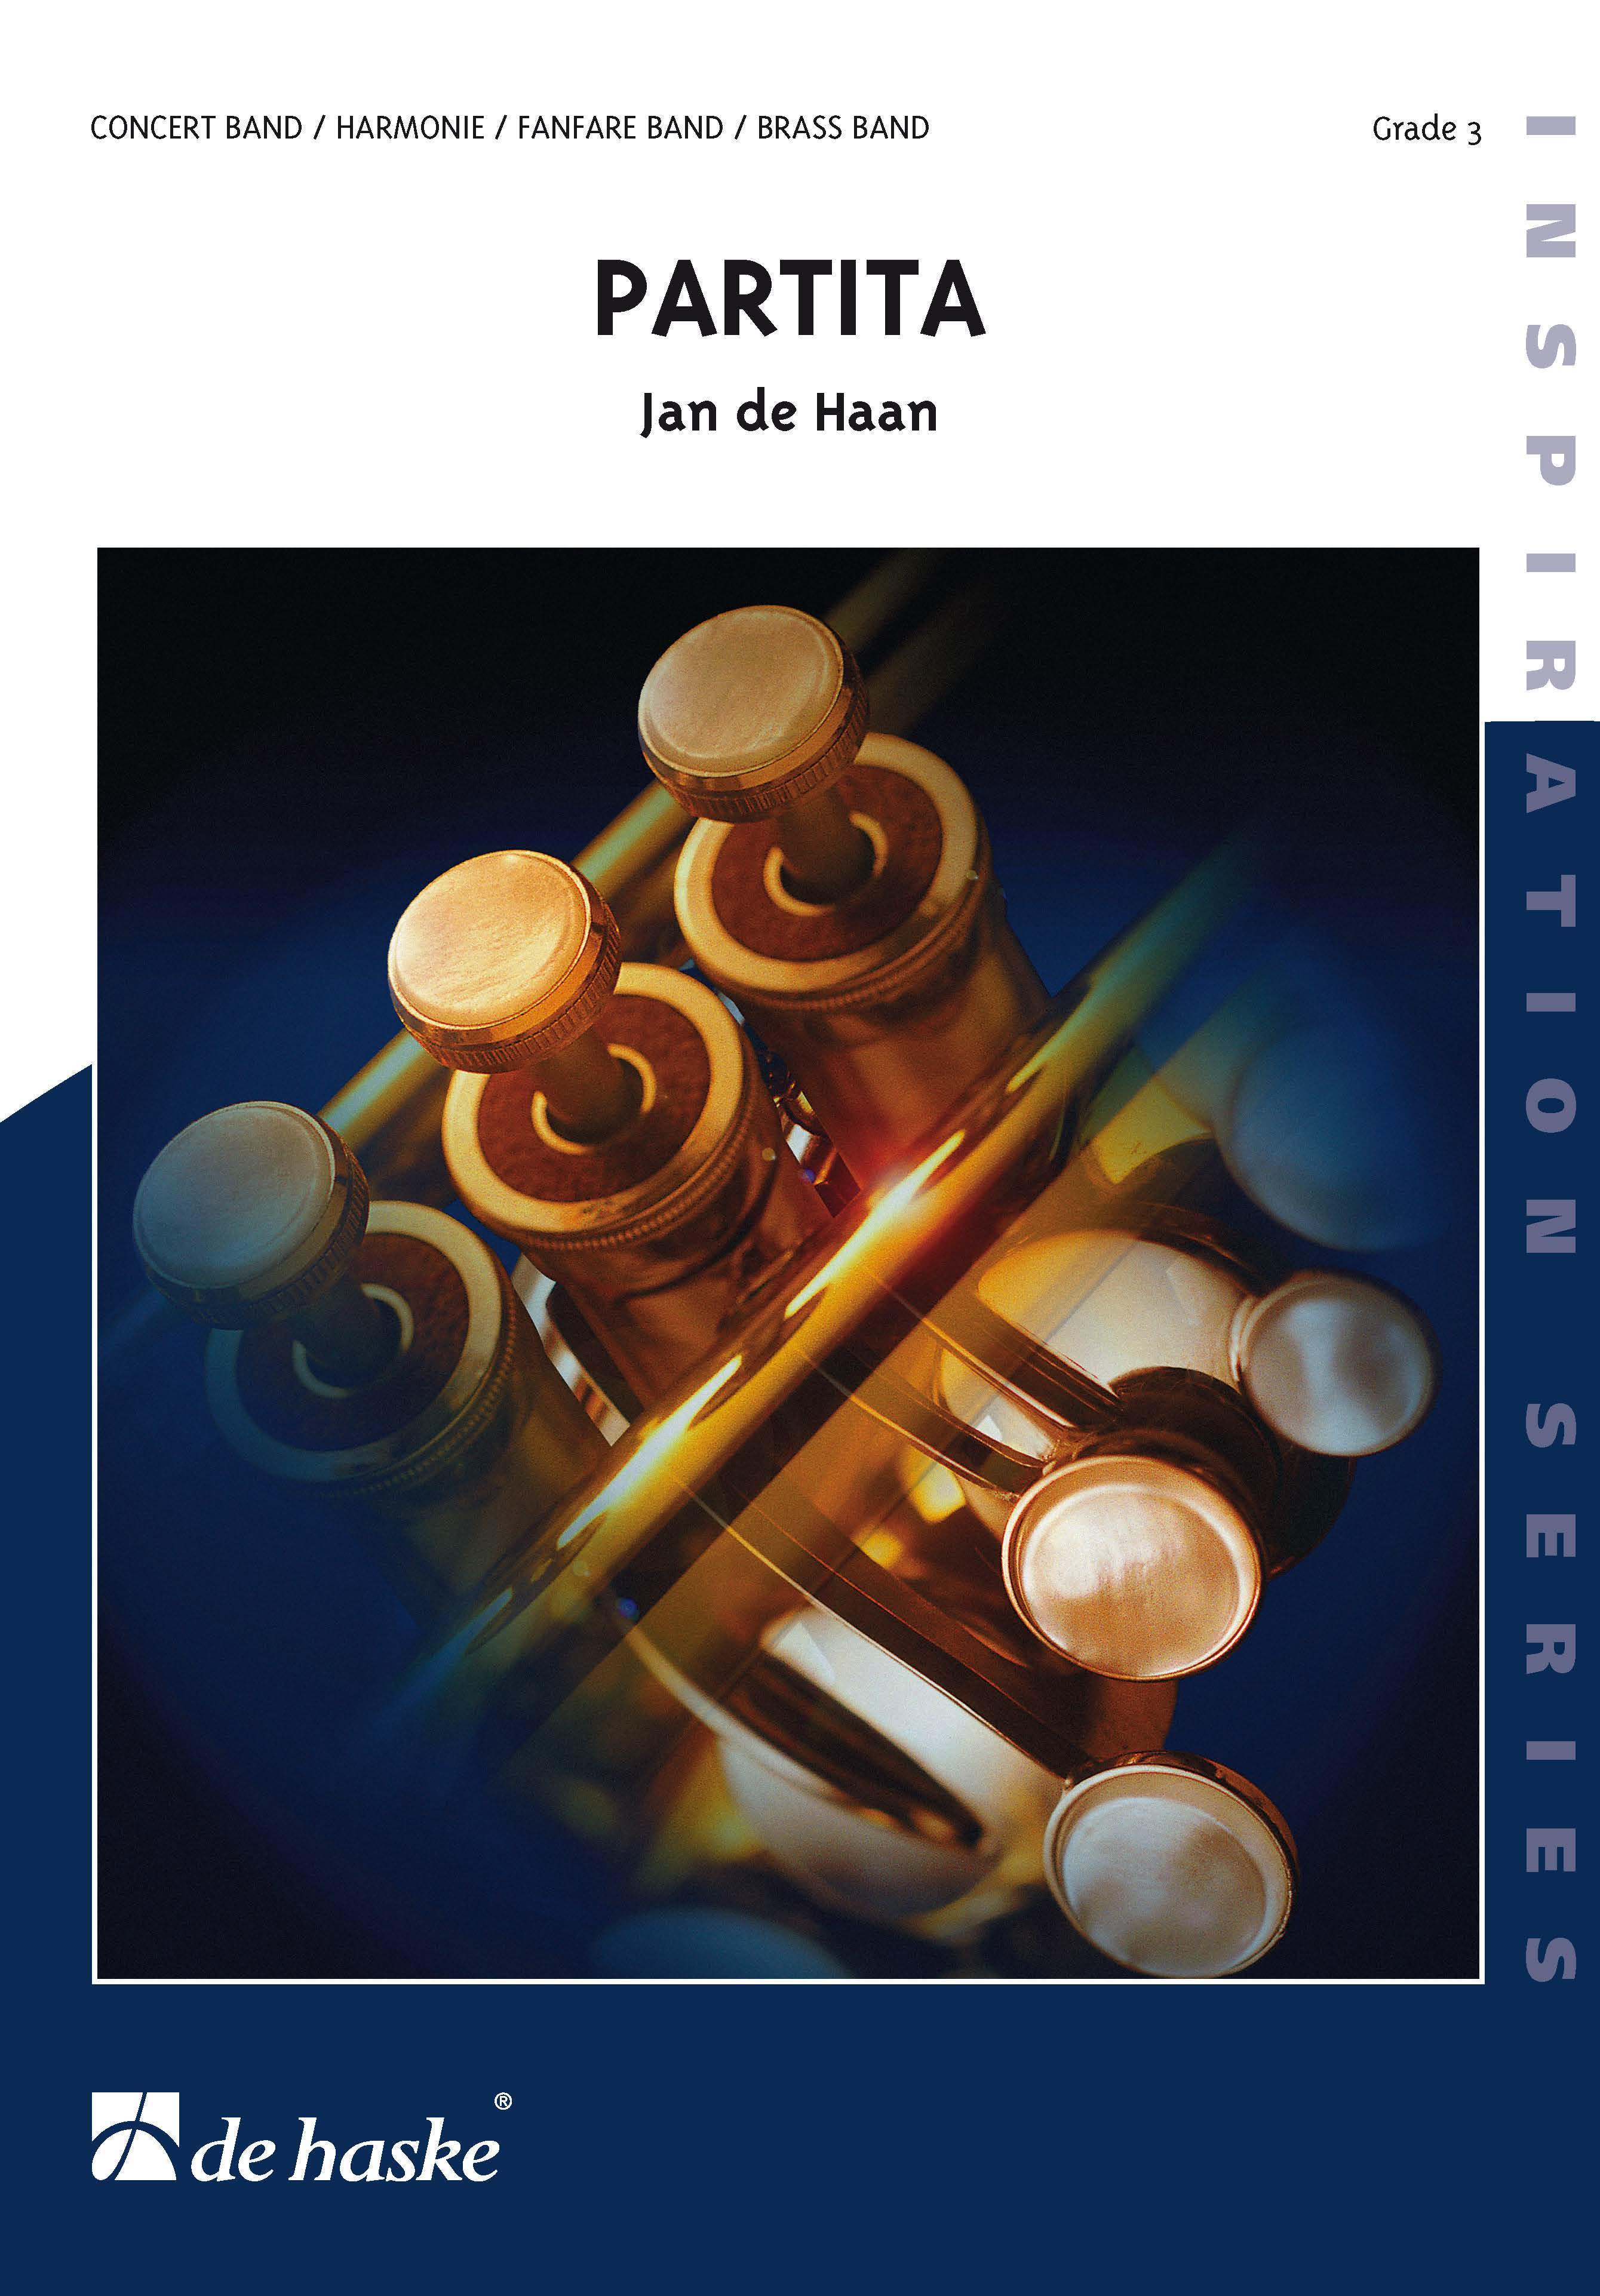 Jan de Haan: Partita: Concert Band: Score